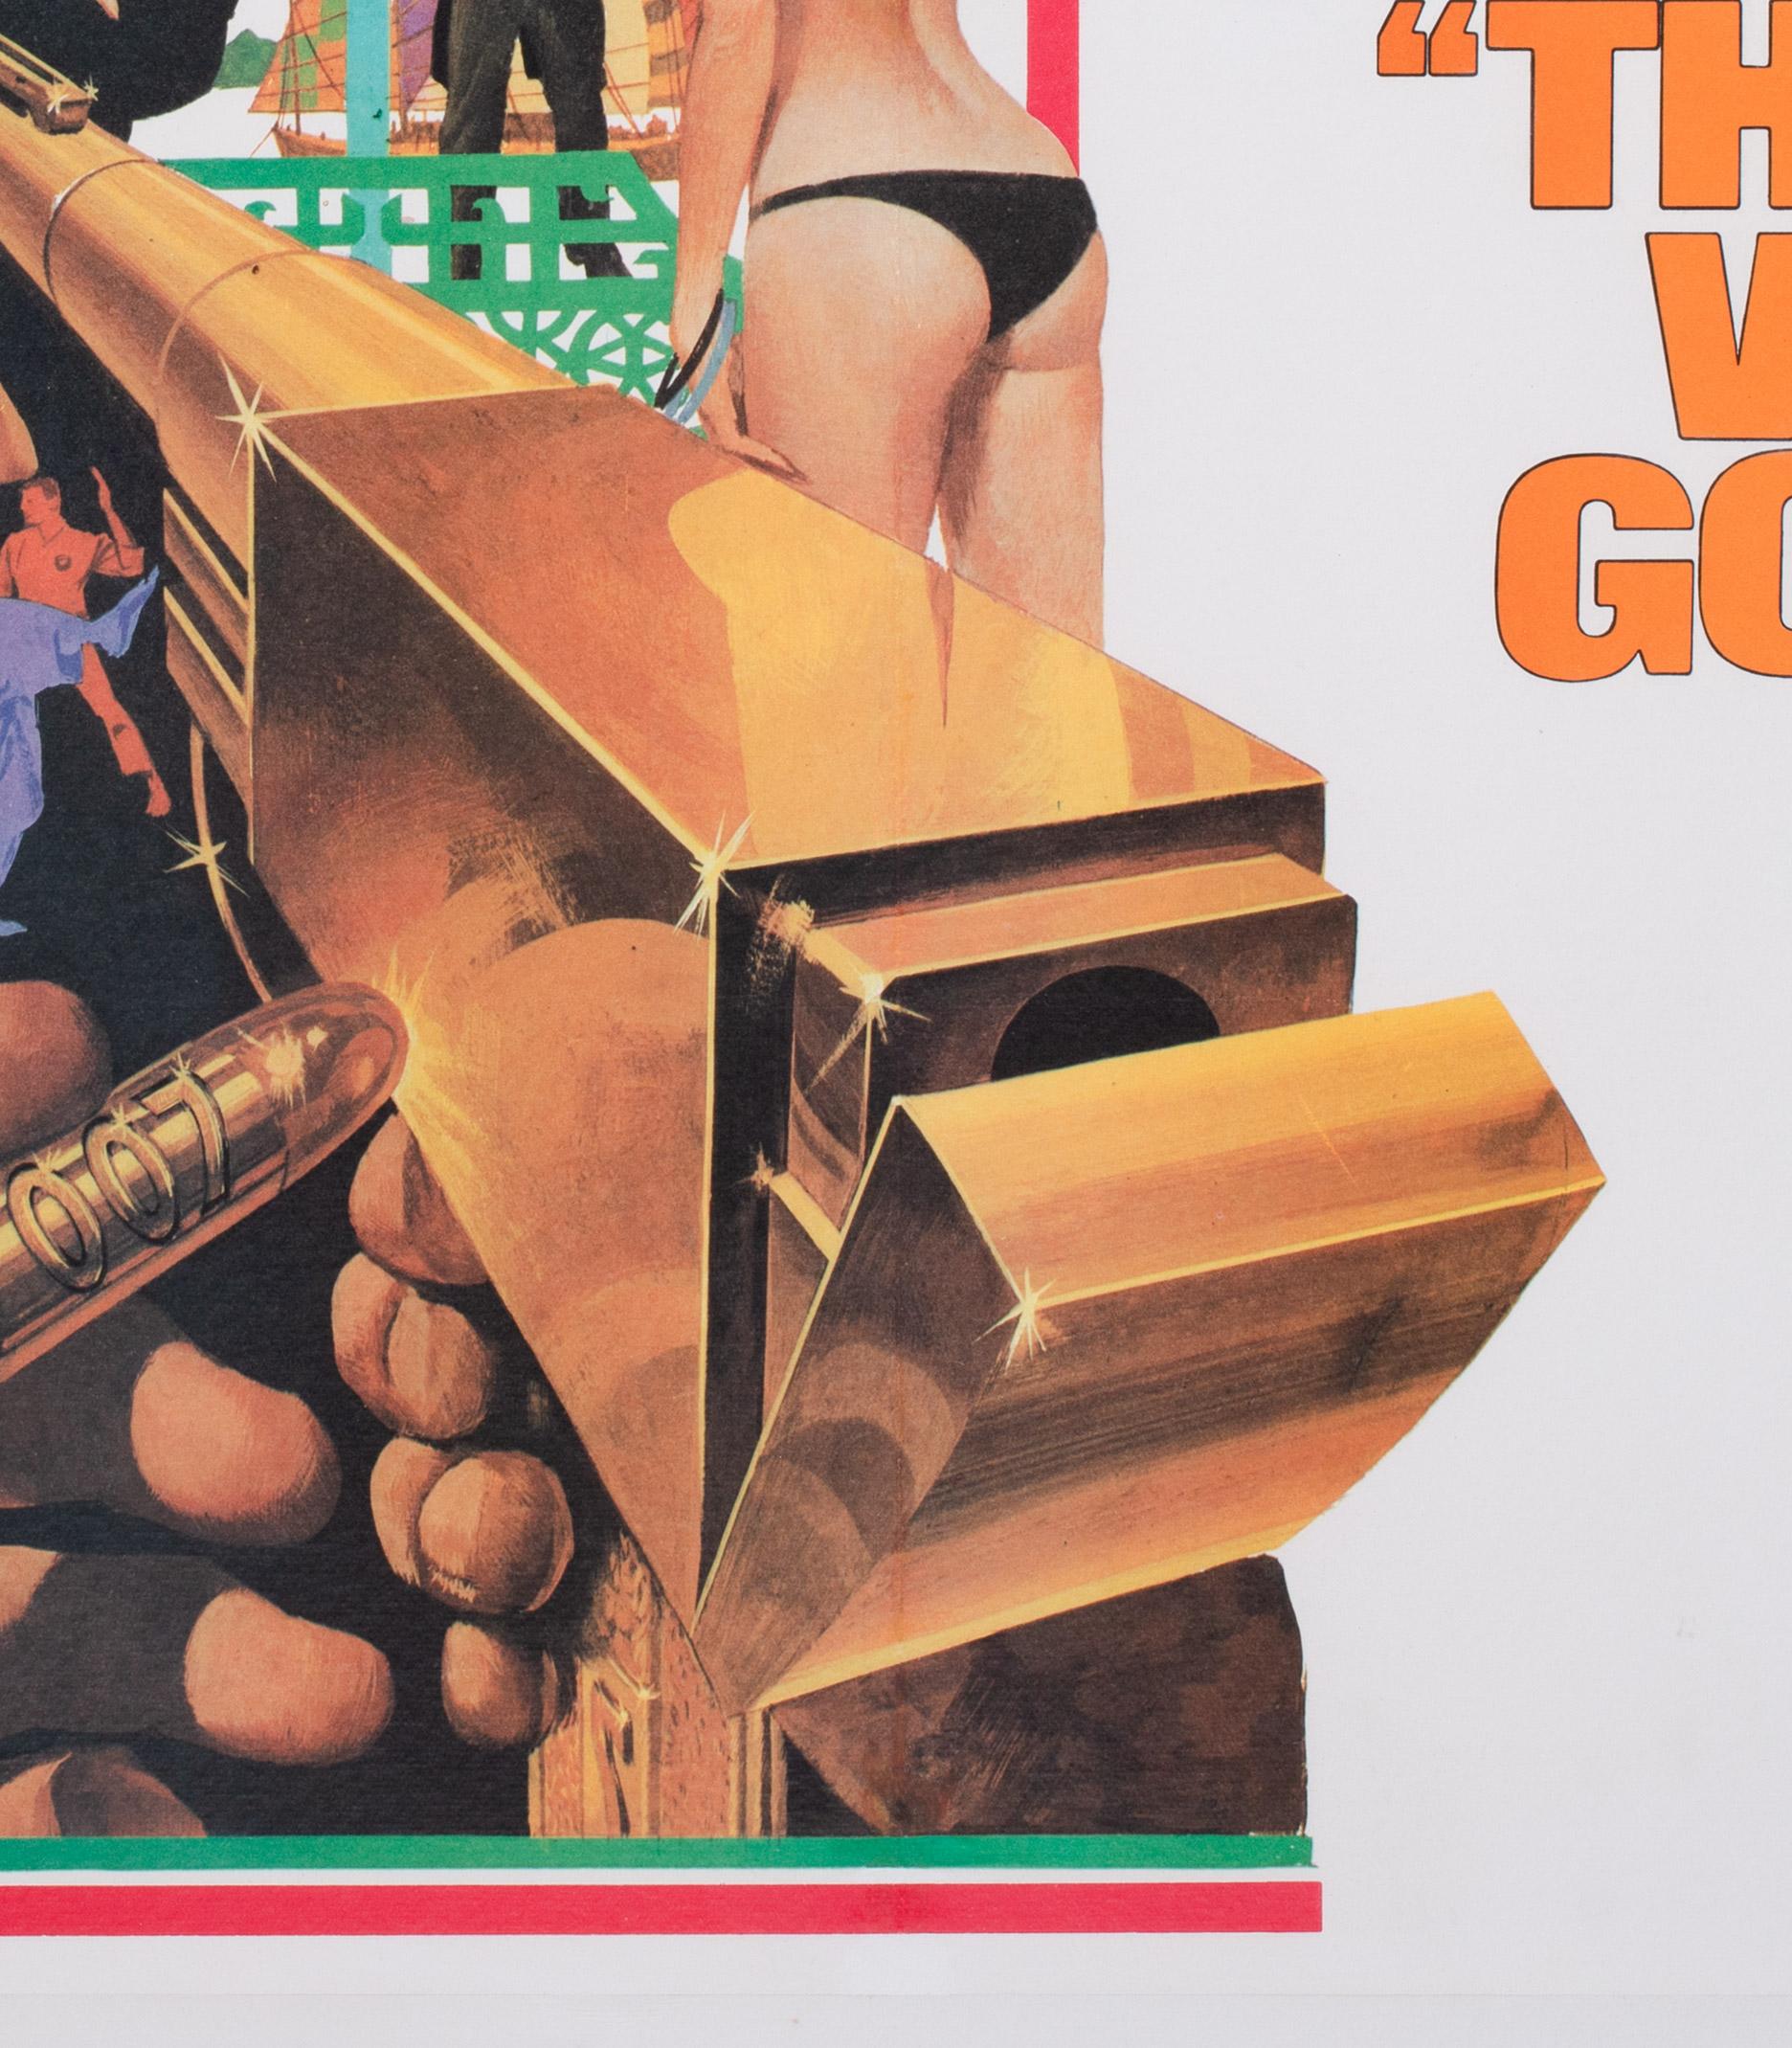 Man with the Golden Gun, James Bond, UK Film Poster, Robert McGinnis, 1974 1